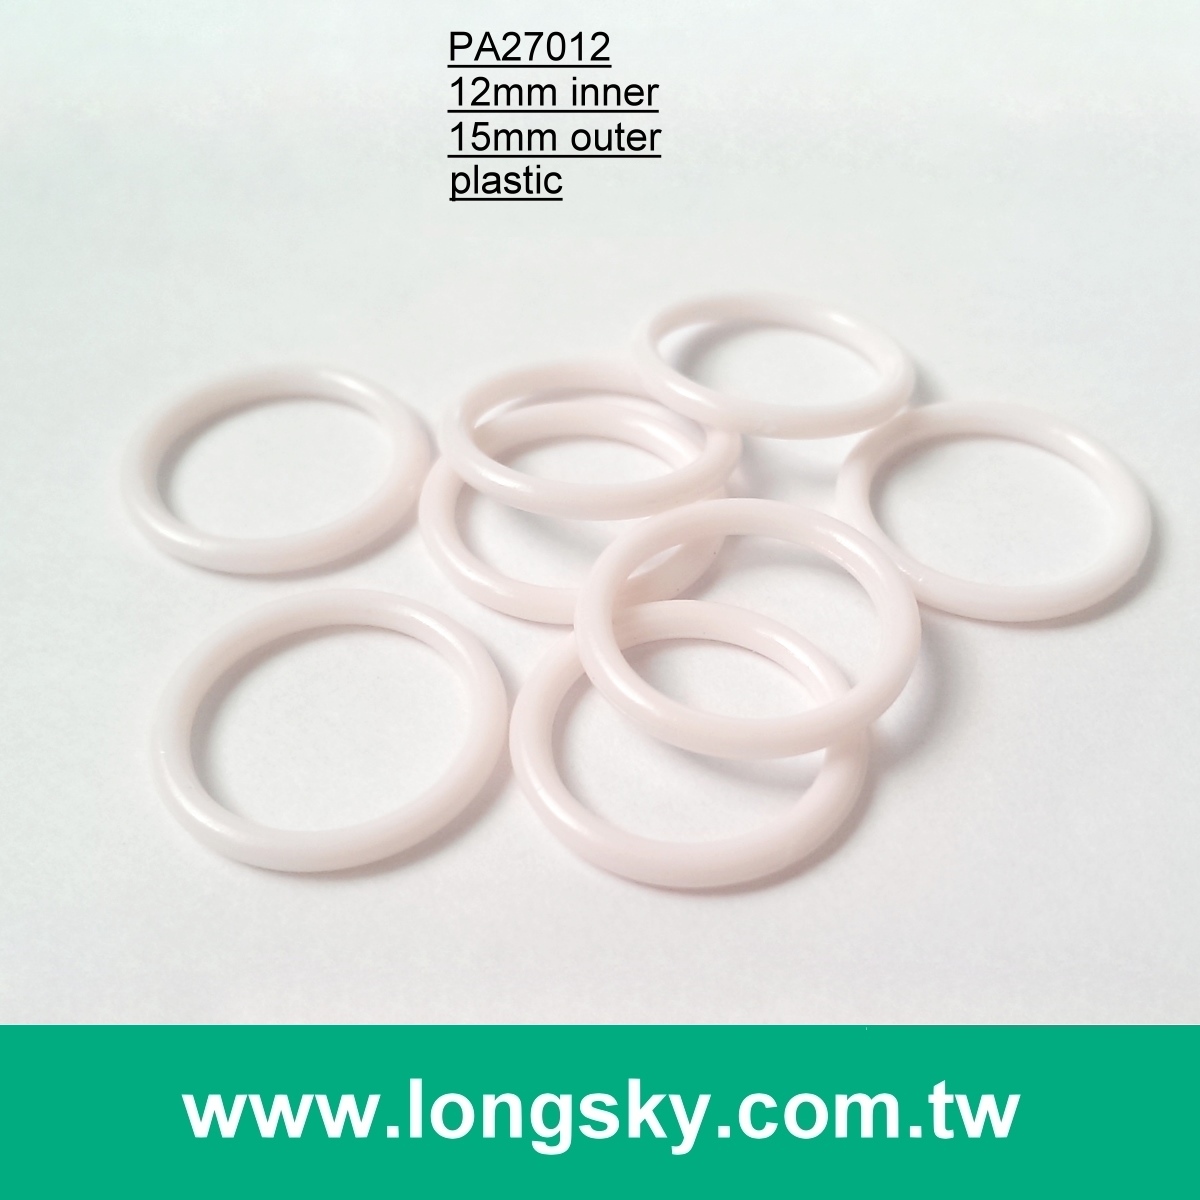 (#PA27012/12mm inner) plastic circle ring for garter belt and bra